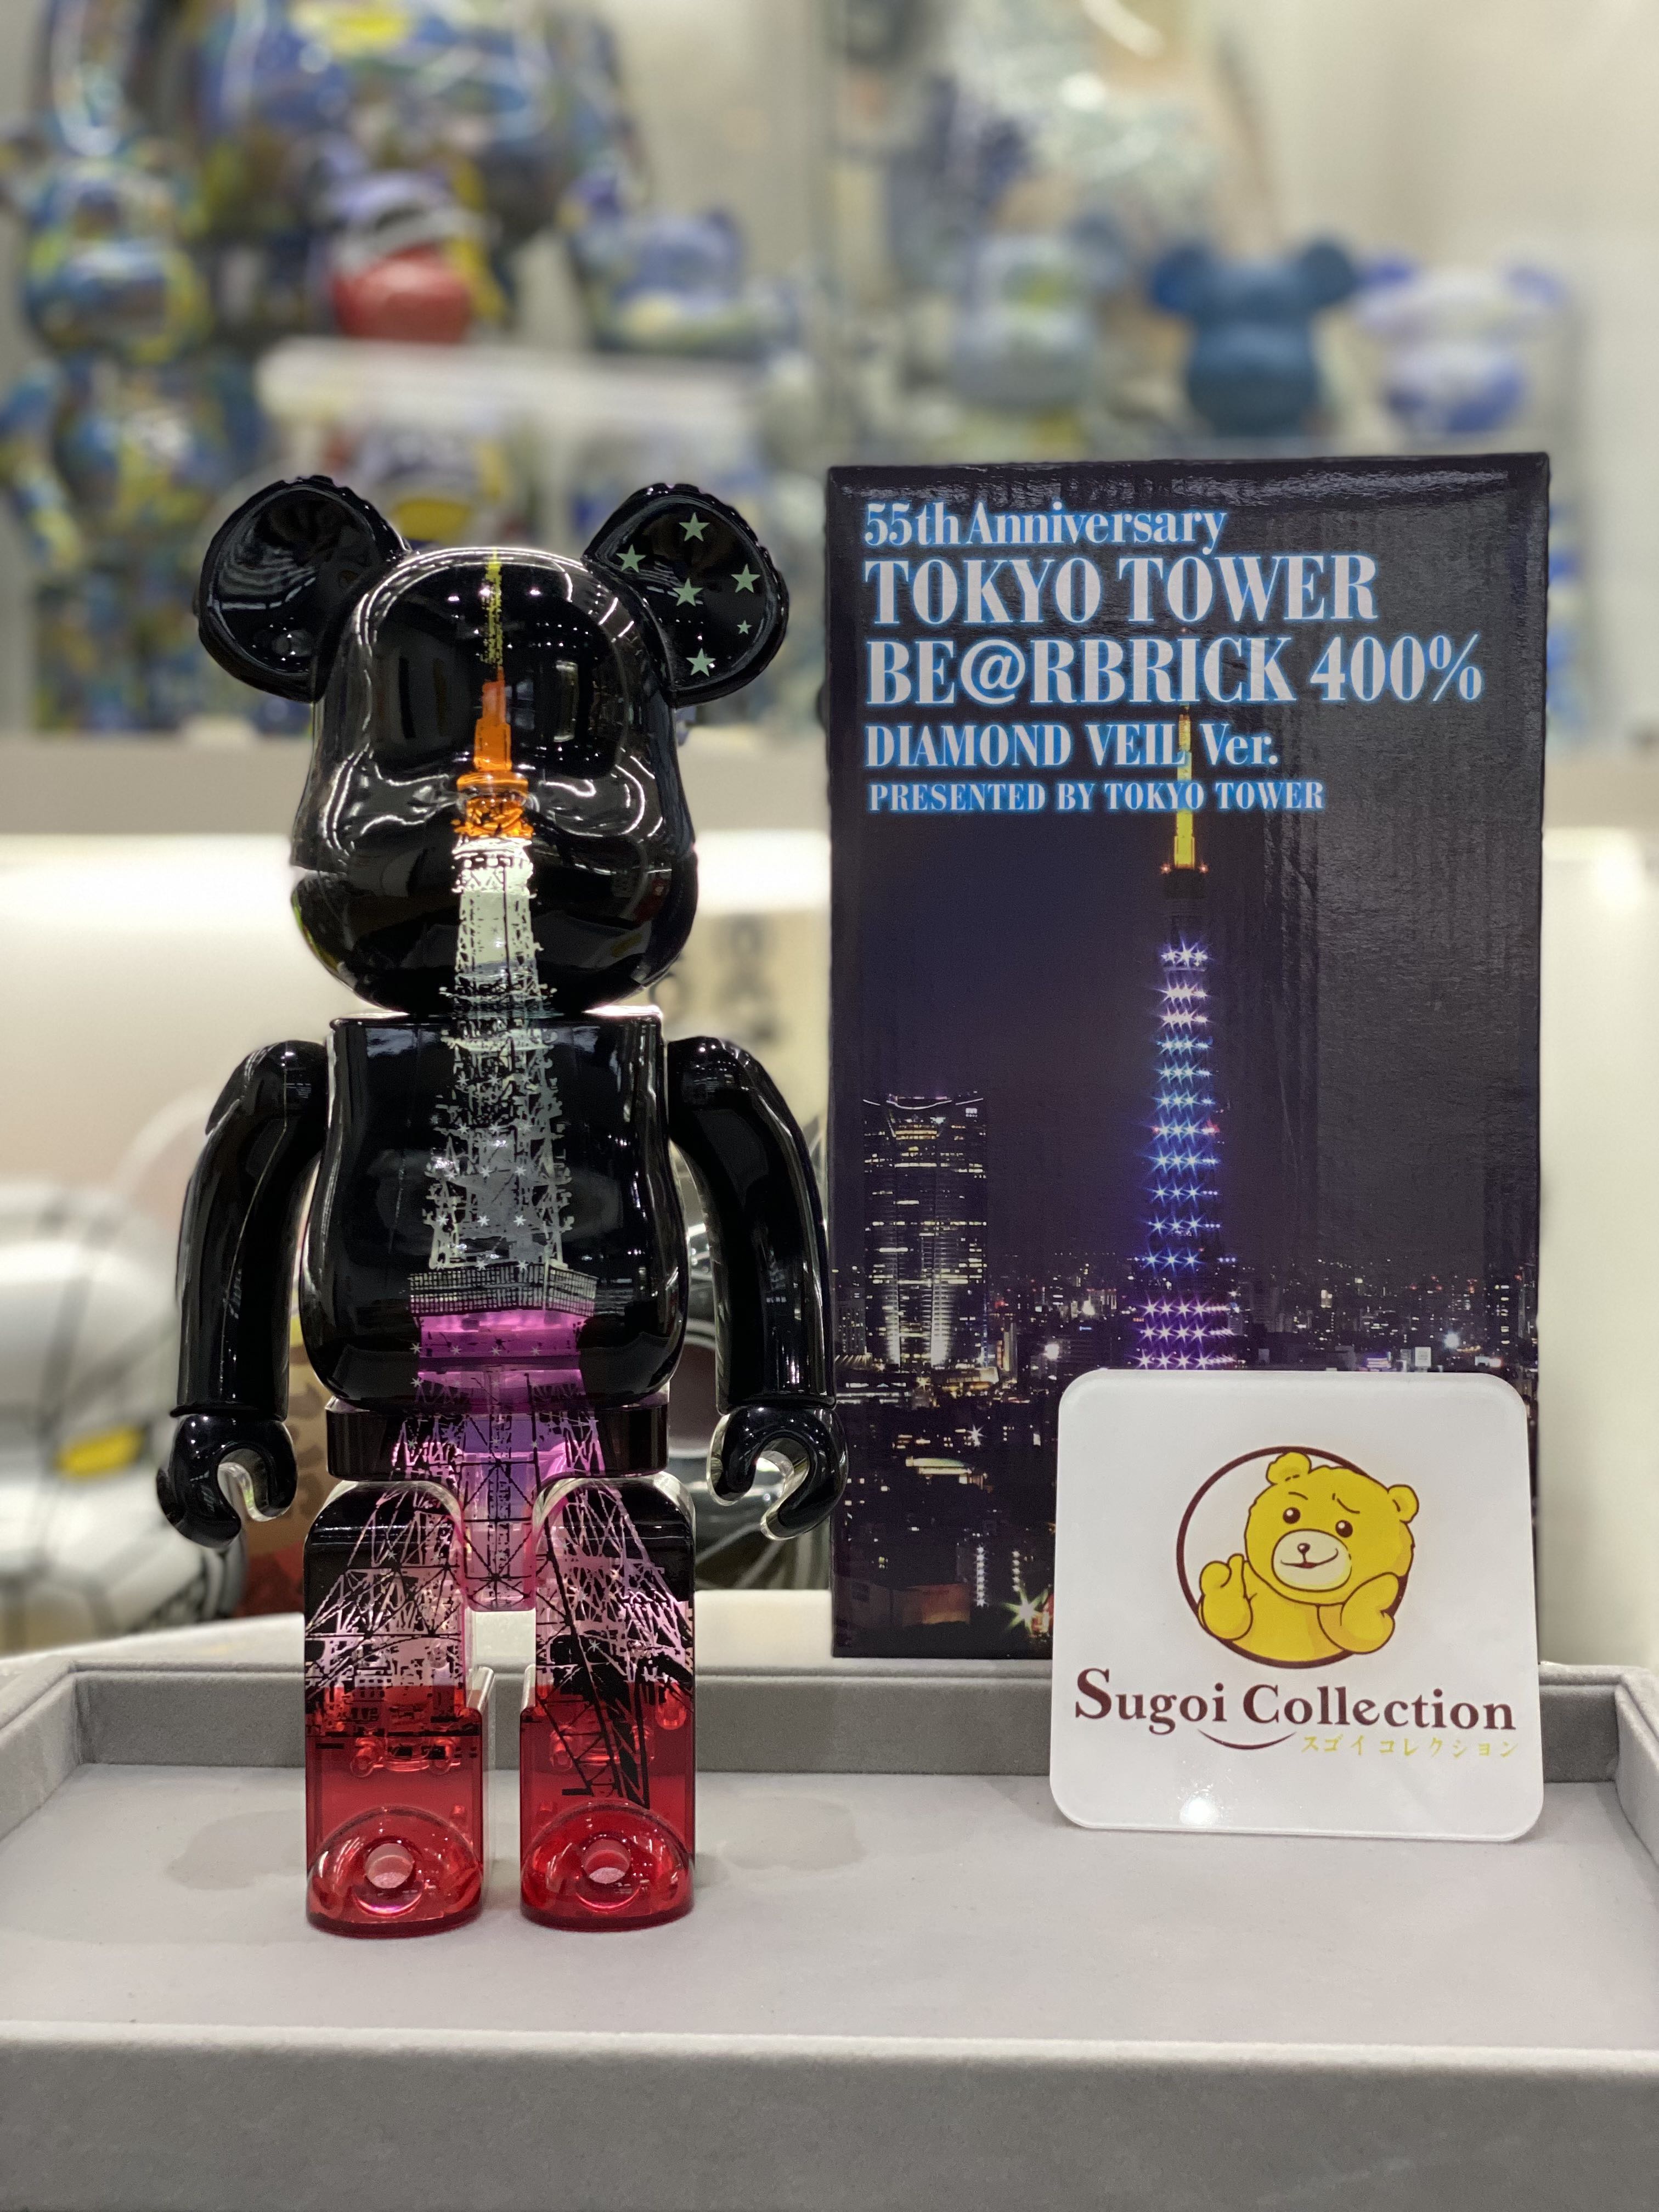 ベアブリック 東京タワー 400% BE@RBRICK TOKYO TOWER 55th - 人形 